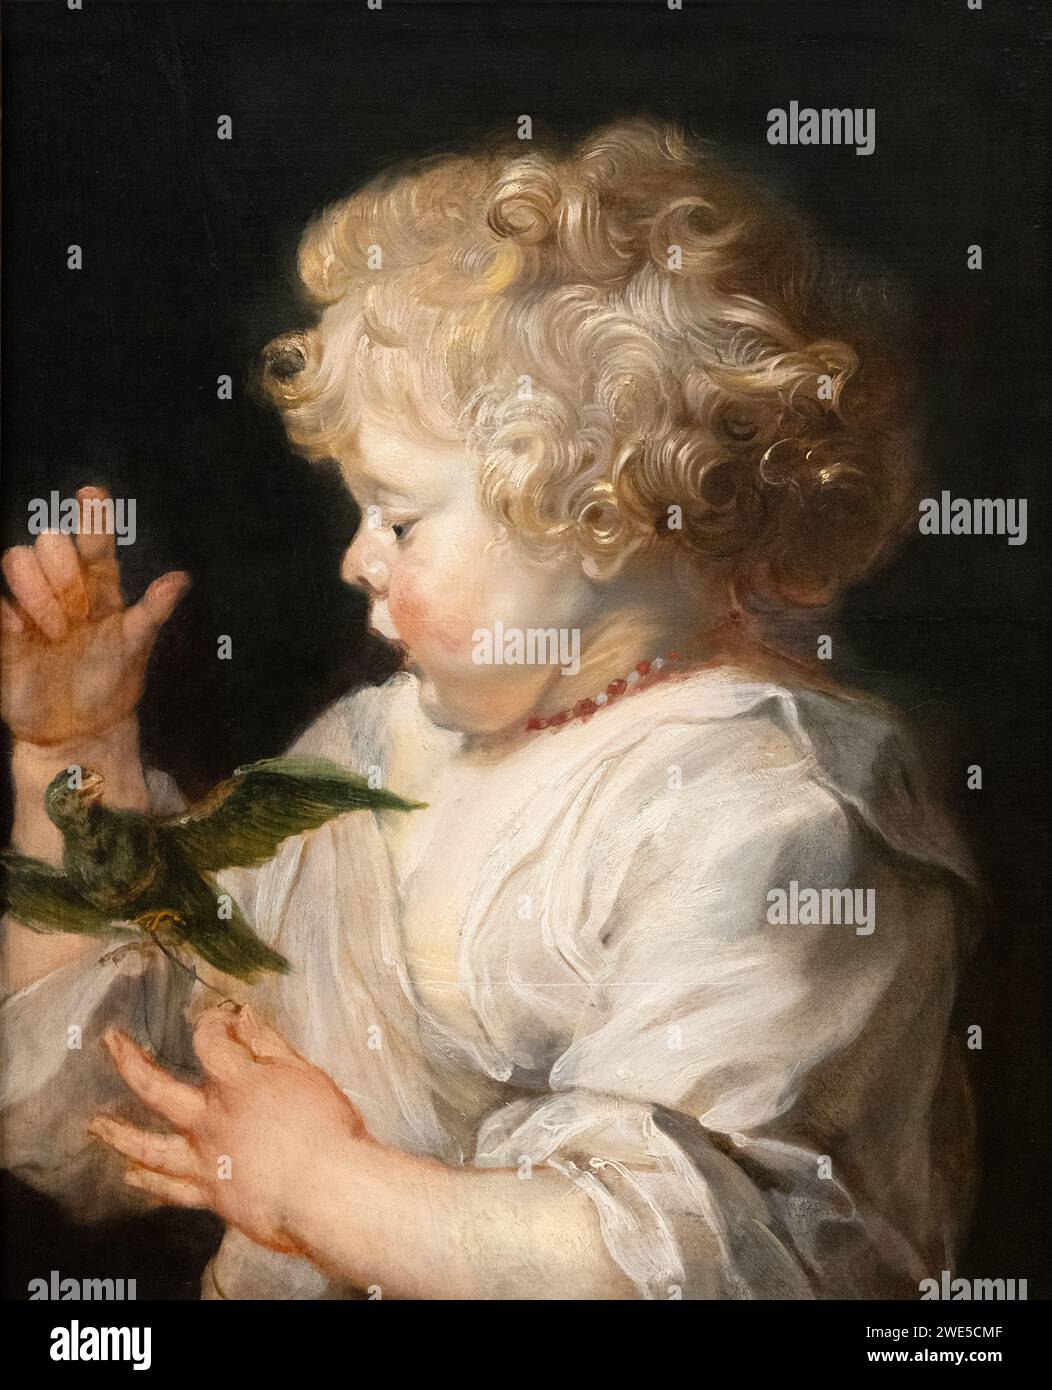 Pierre Paul Rubens peinture 'l'enfant avec l'oiseau' c. 1614 et après 1625. Une des rares peintures que Rubens a faites des enfants. peinture baroque des années 1600. Banque D'Images